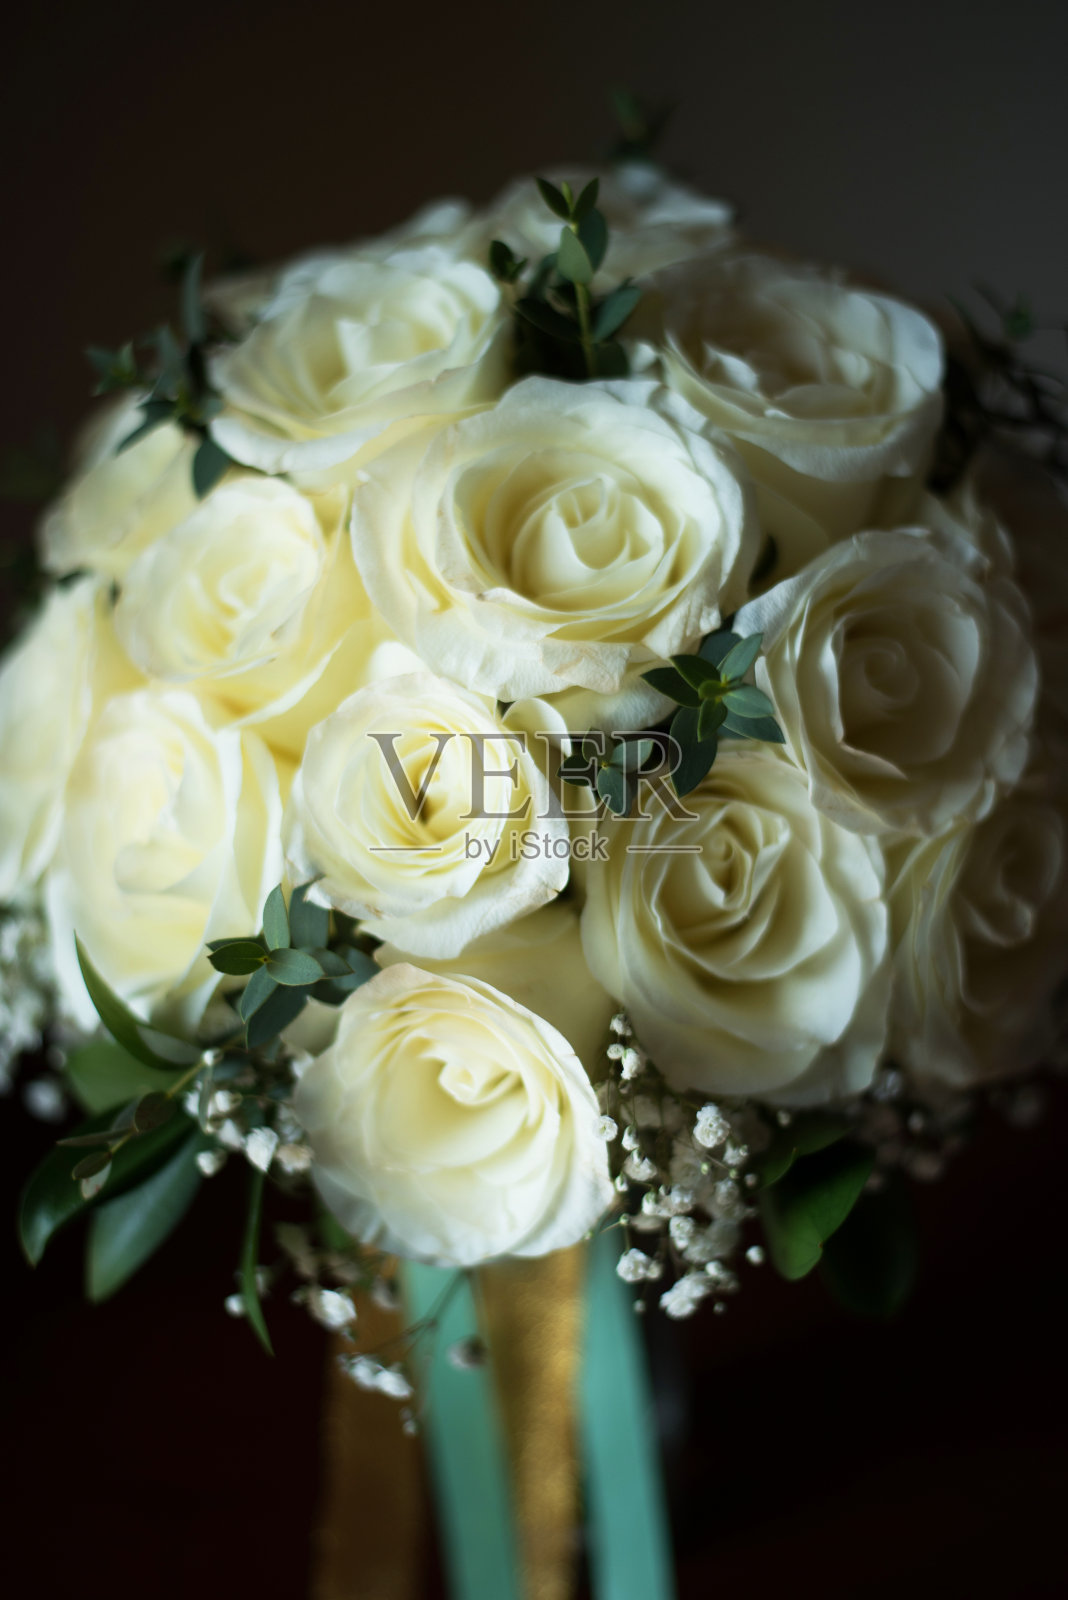 婚礼上新娘用的白玫瑰花束照片摄影图片